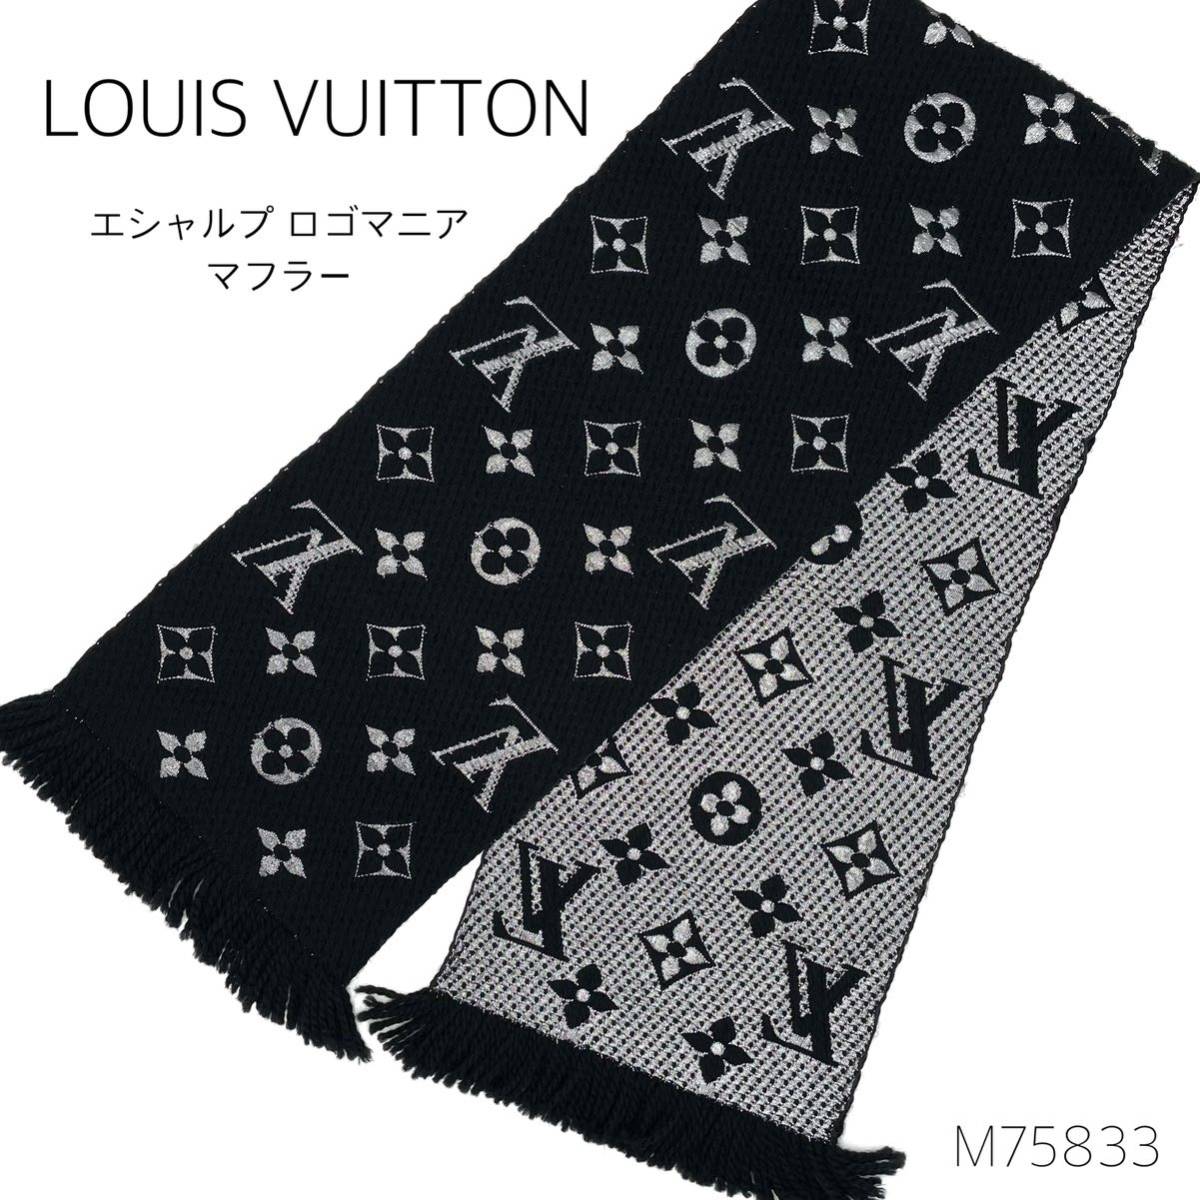 LOUIS VUITTON ルイヴィトン M75833 エシャルプ ロゴマニア フリンジ